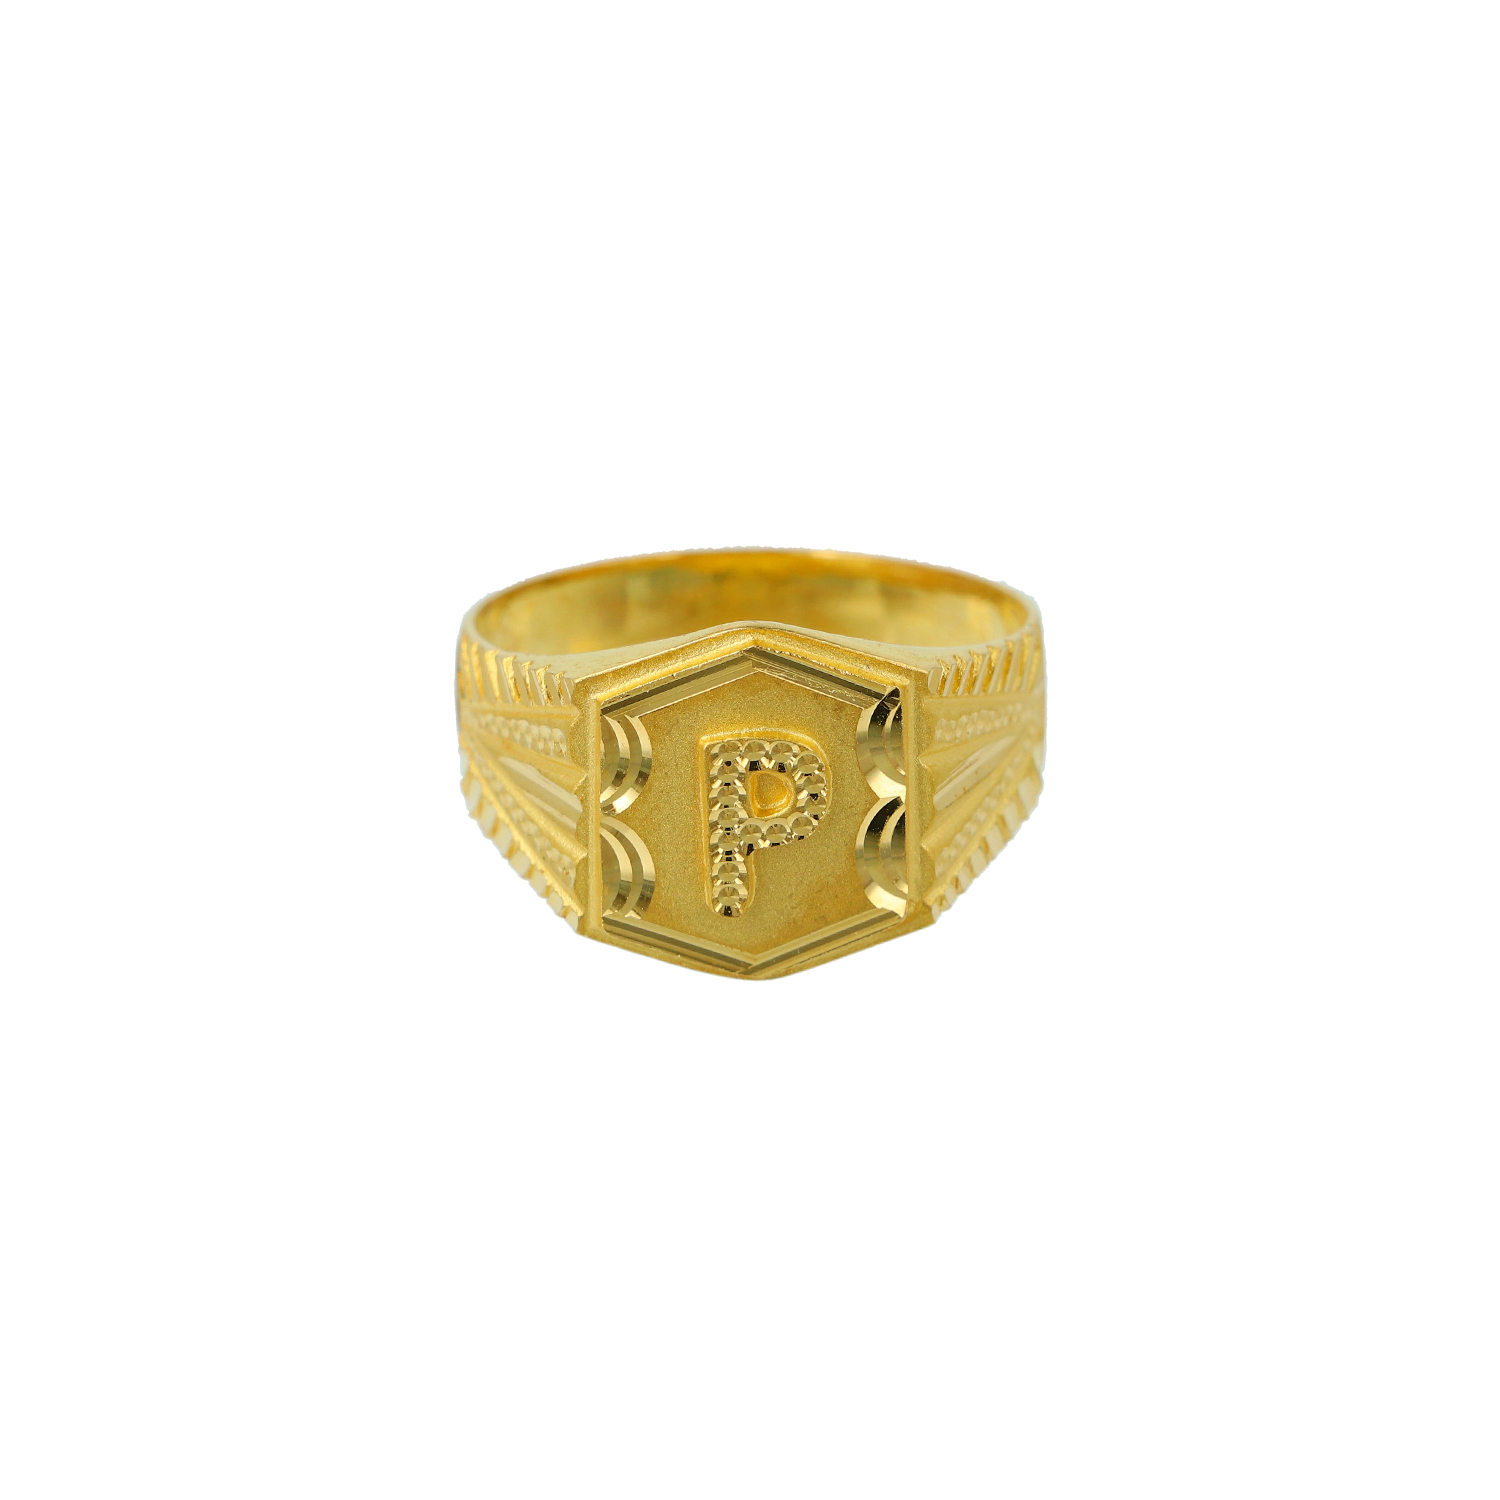 25 Gold Ring Designs For Men, Buy Gold Rings For Men Price Starting @ 3265-saigonsouth.com.vn